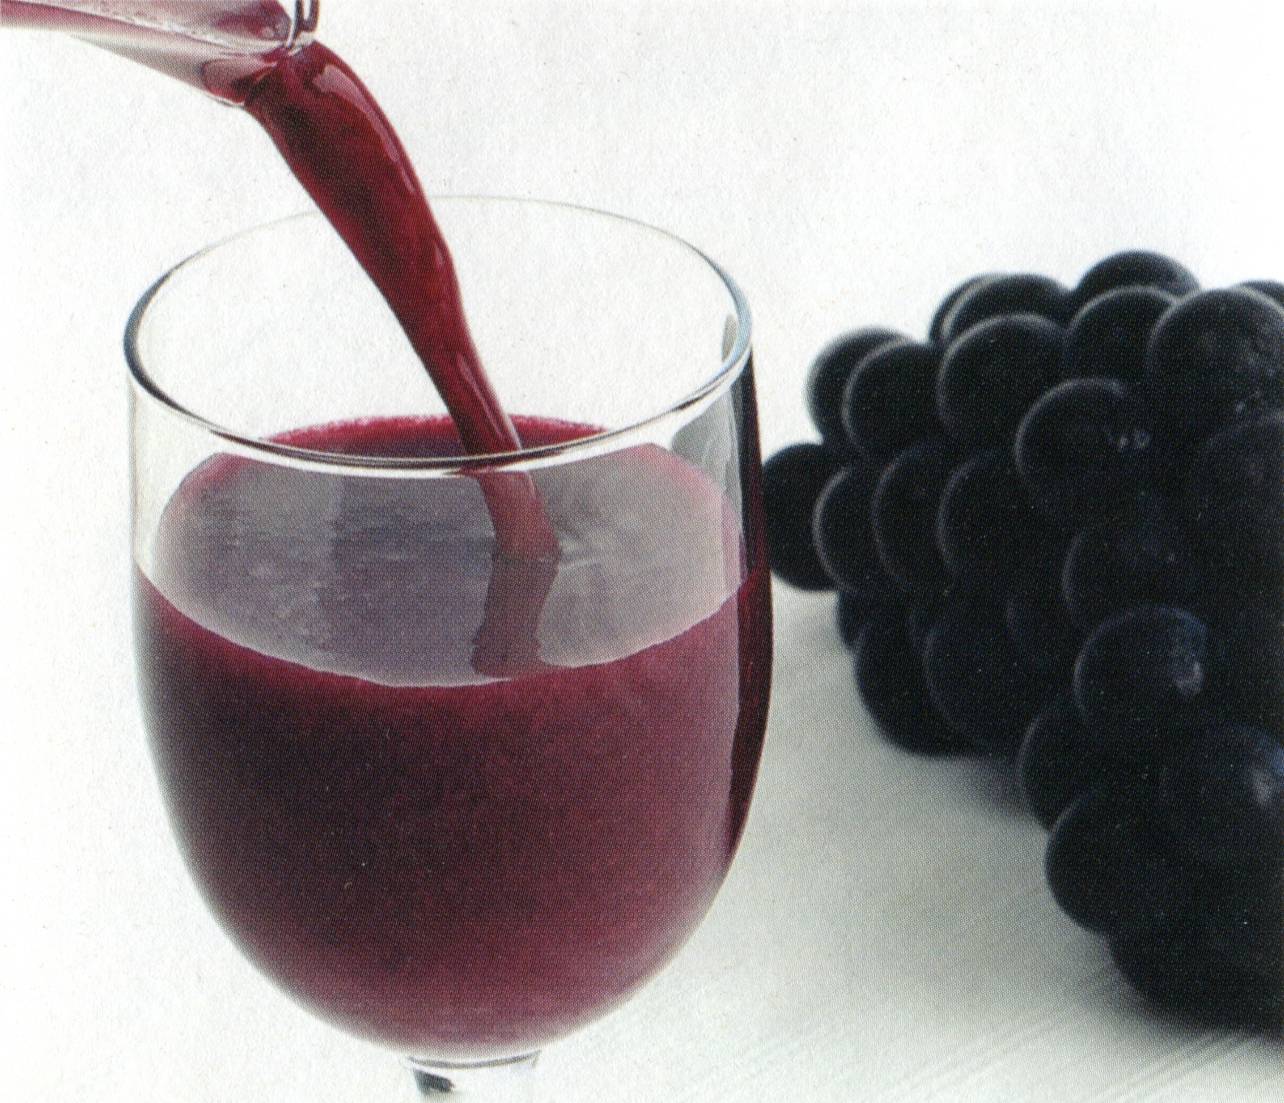 Натуральный виноградный сок: польза и вред